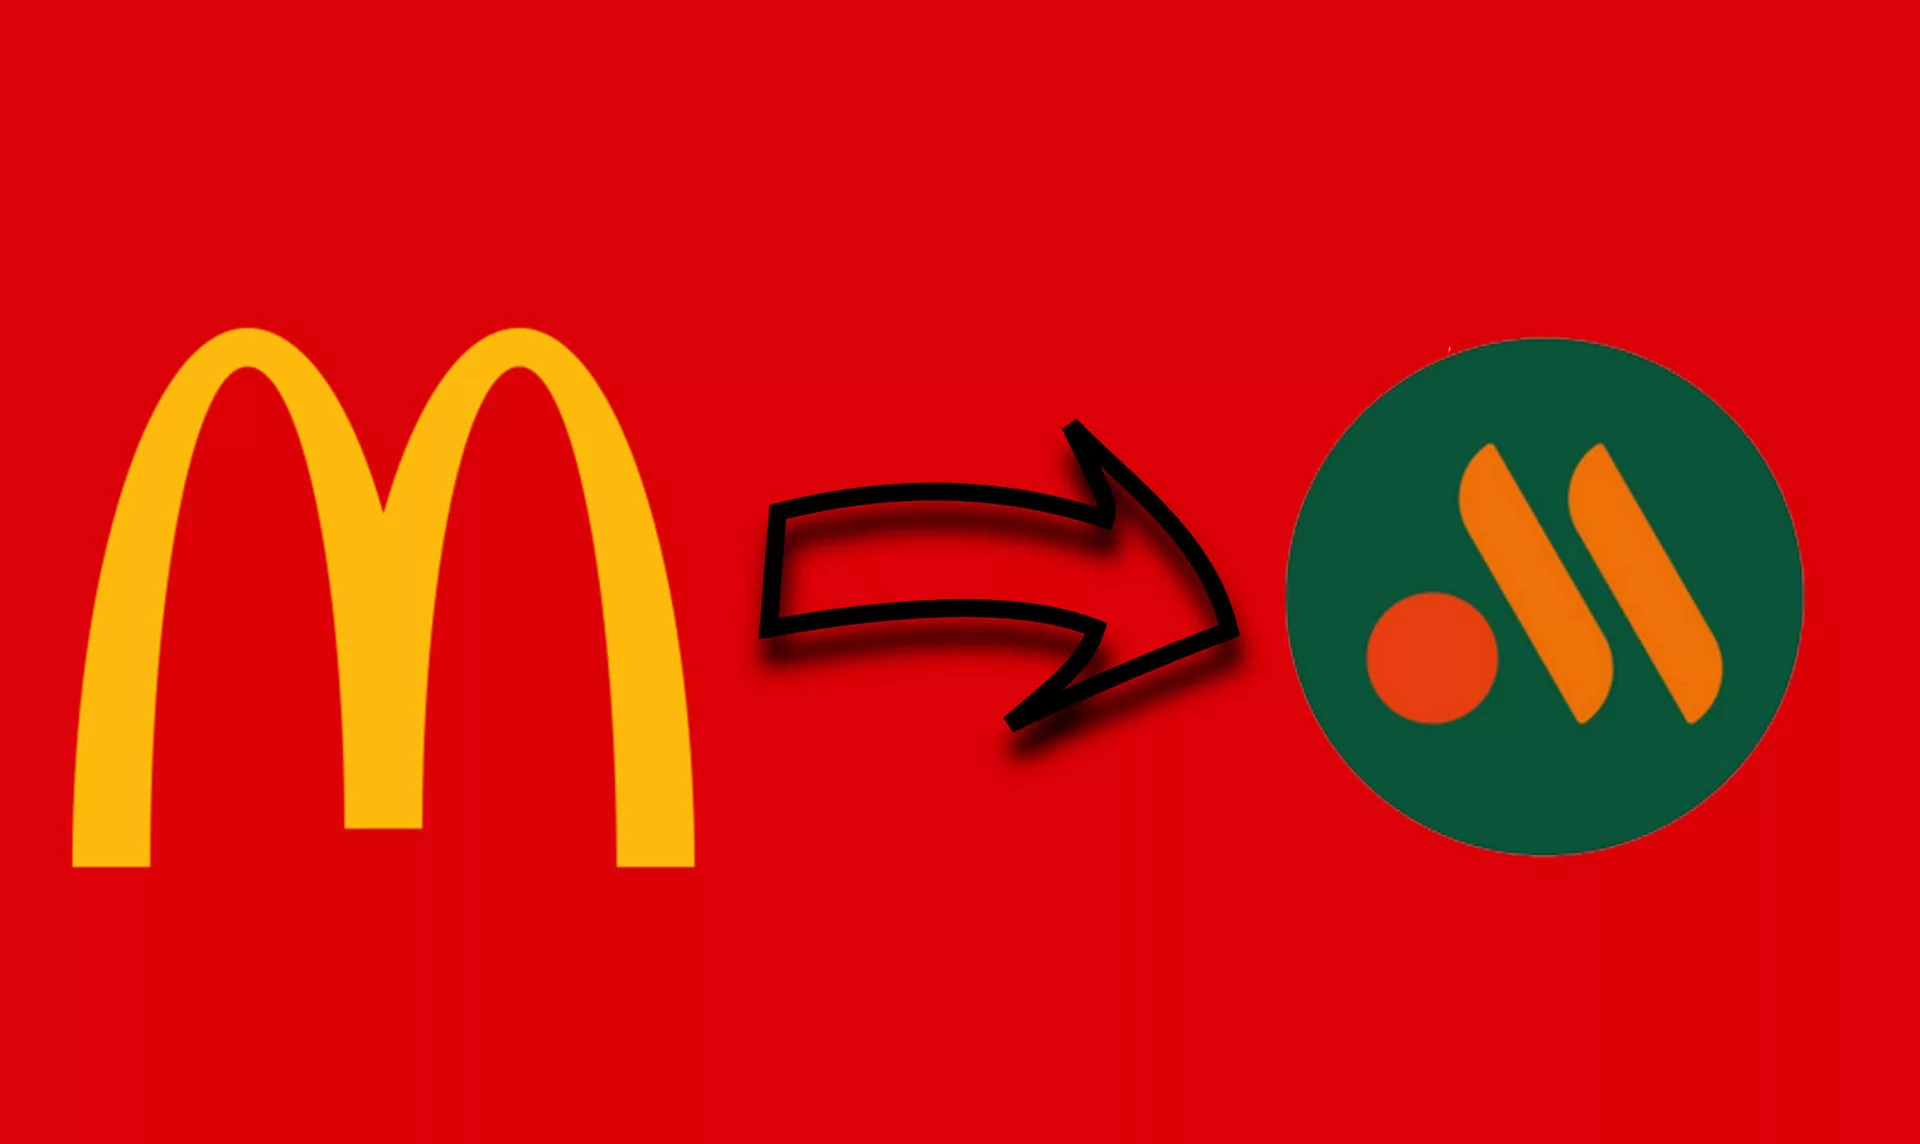 У Макдональдса появился новый логотип